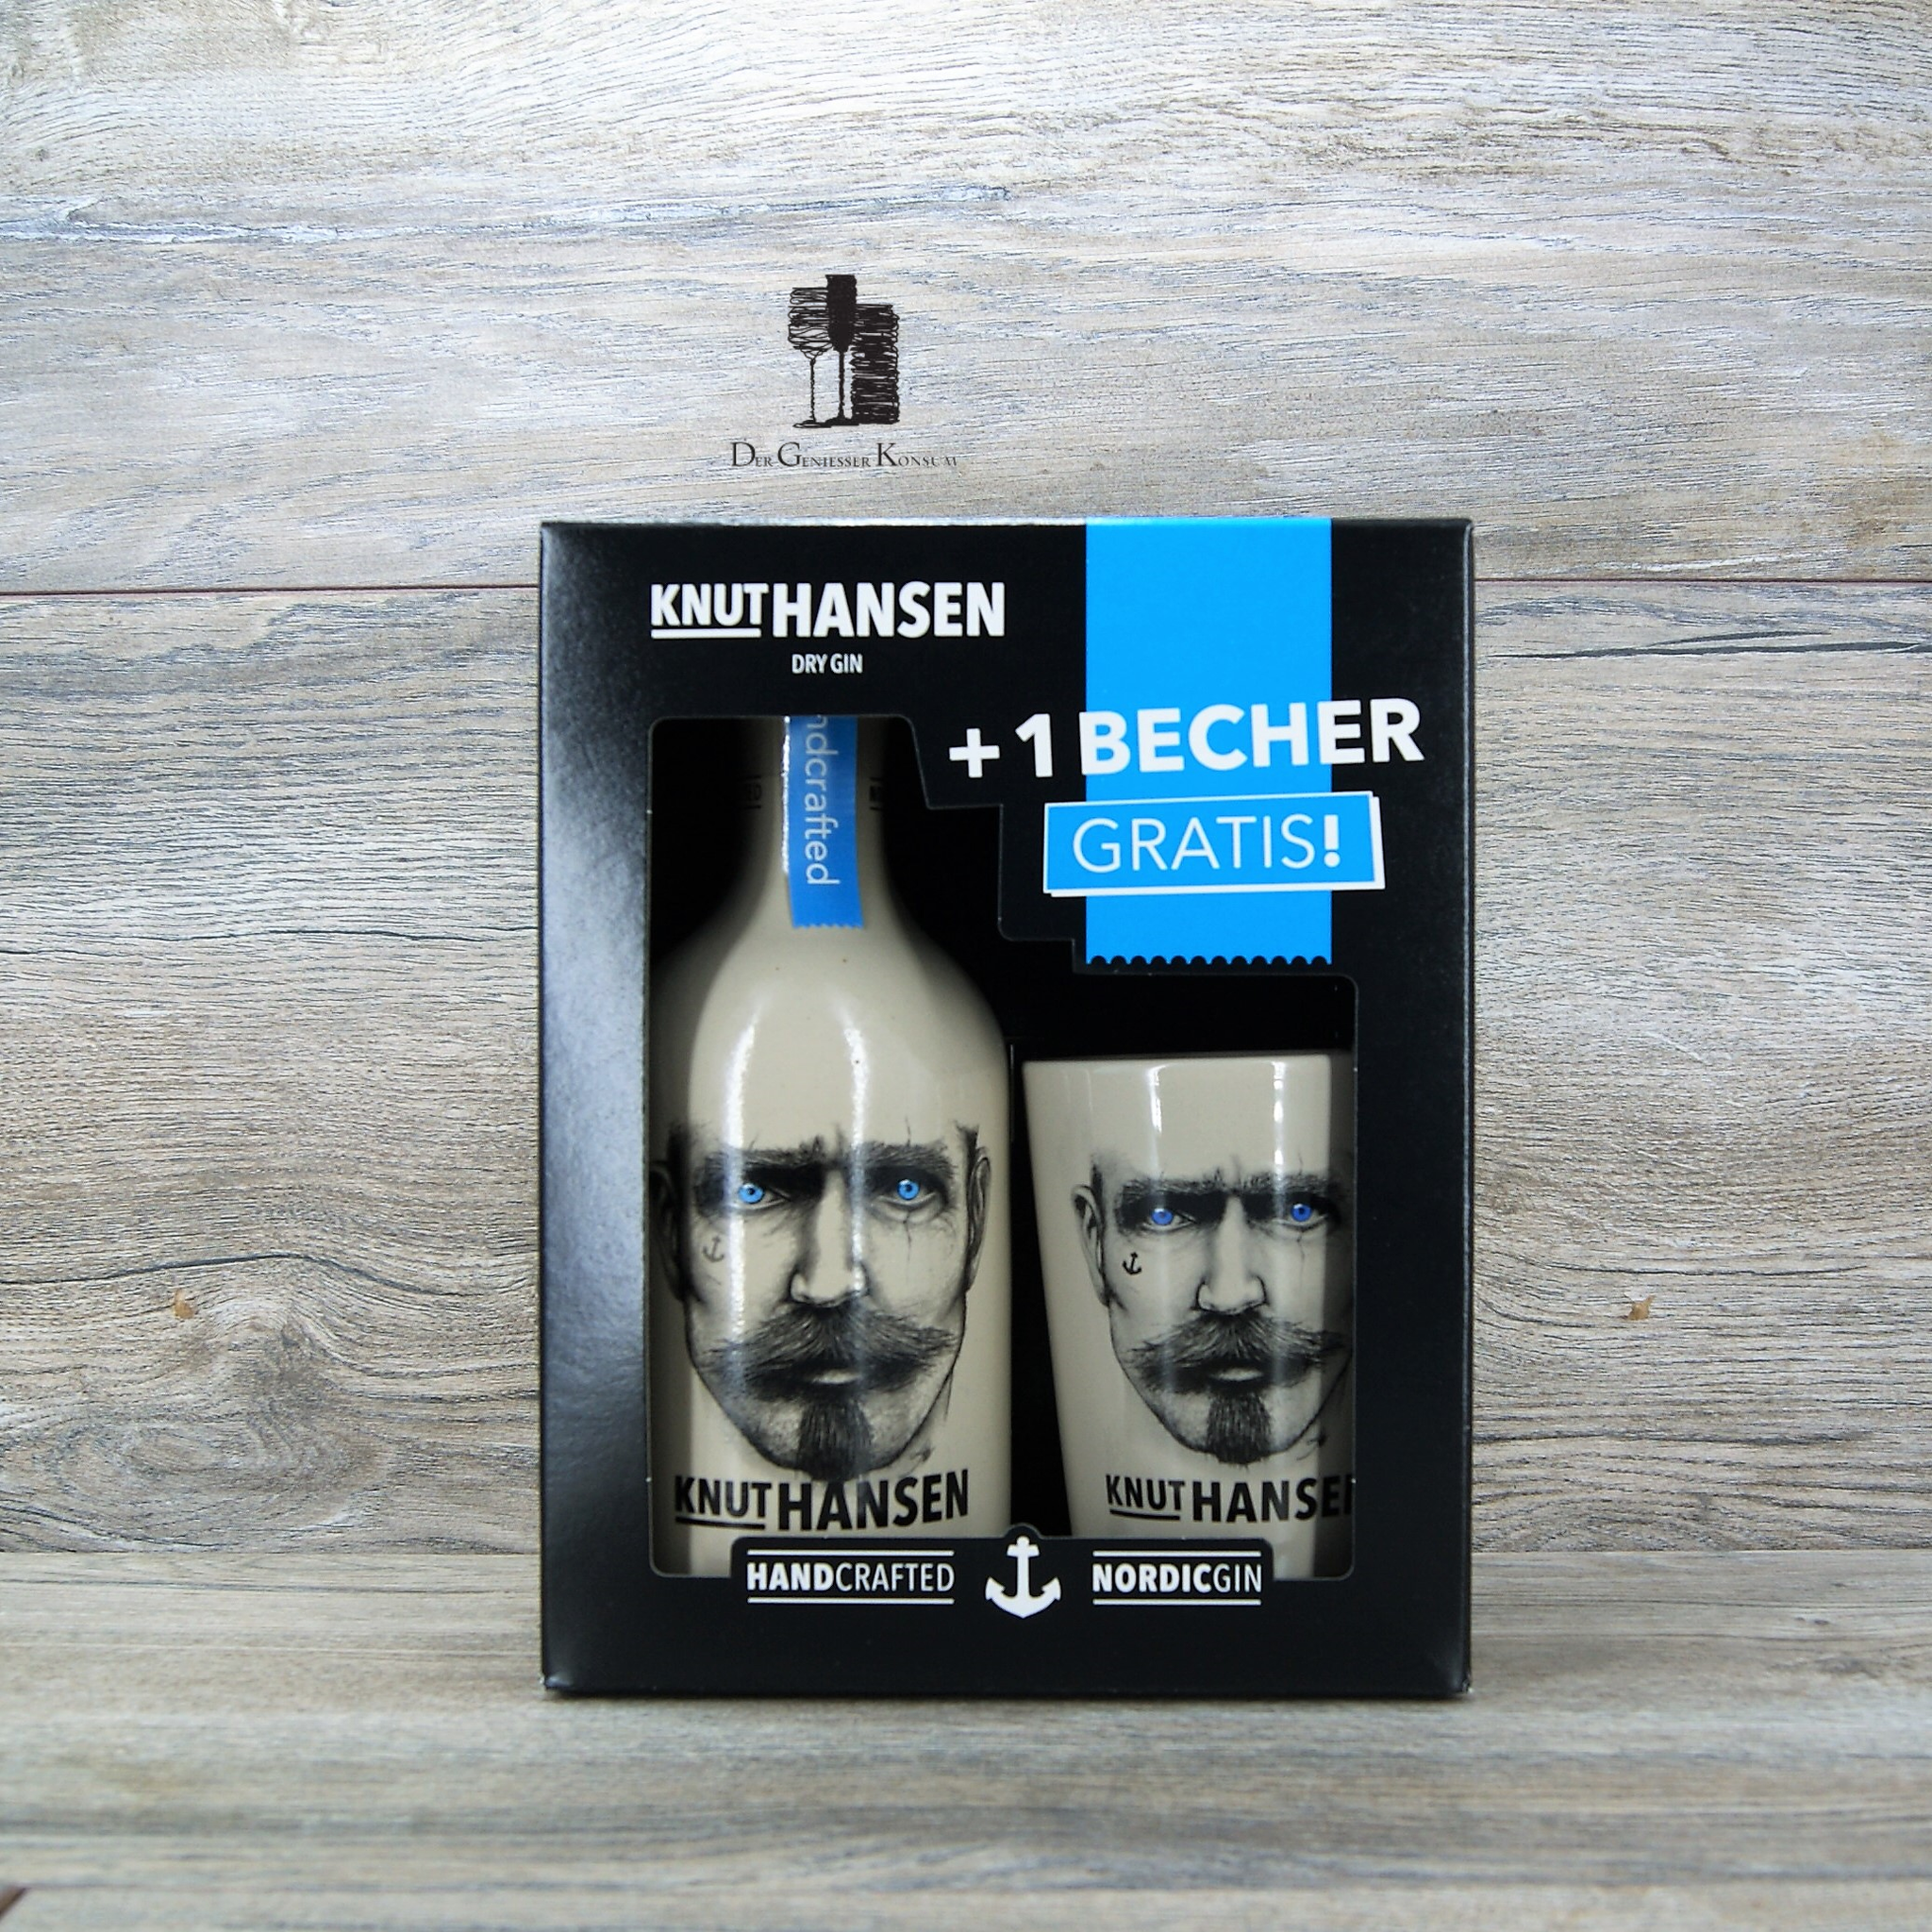 Knut Hansen Dry Gin Geschenk Edition mit 1x Originalen Becher, 0,5l, 4 –  Der Geniesser Konsum